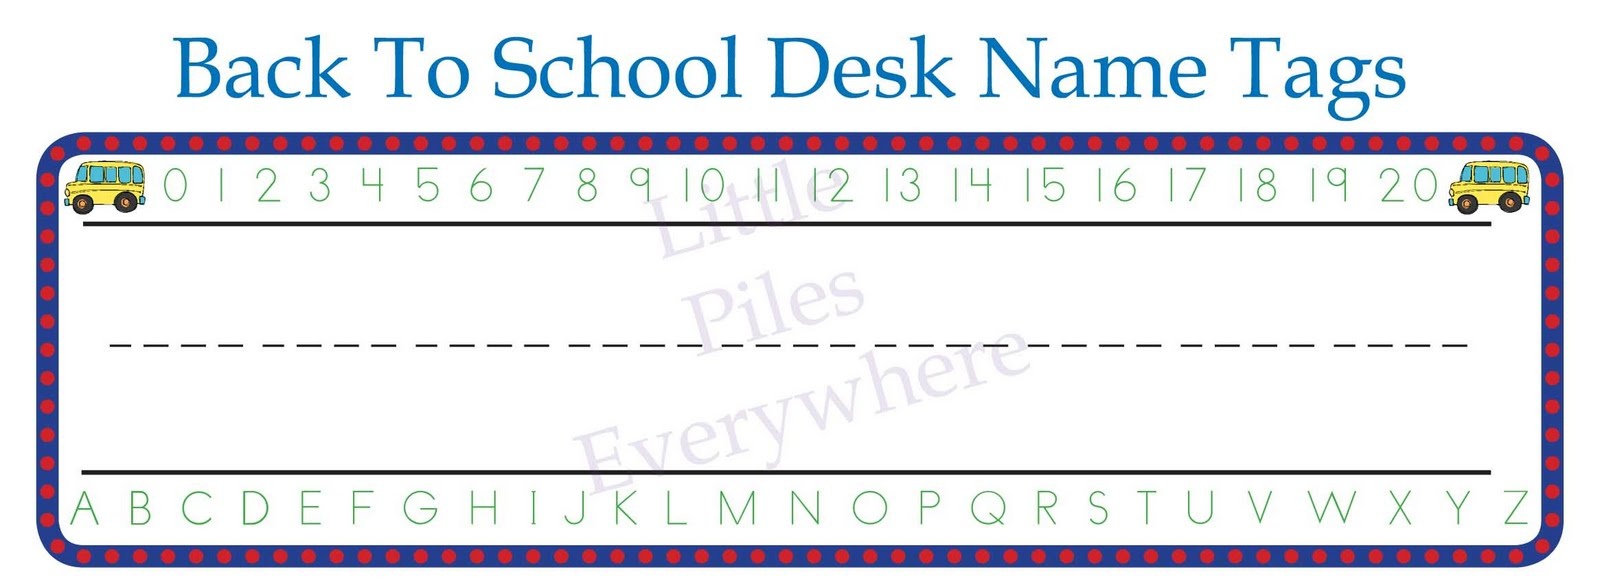 free-printable-name-tags-for-school-desks-free-printable